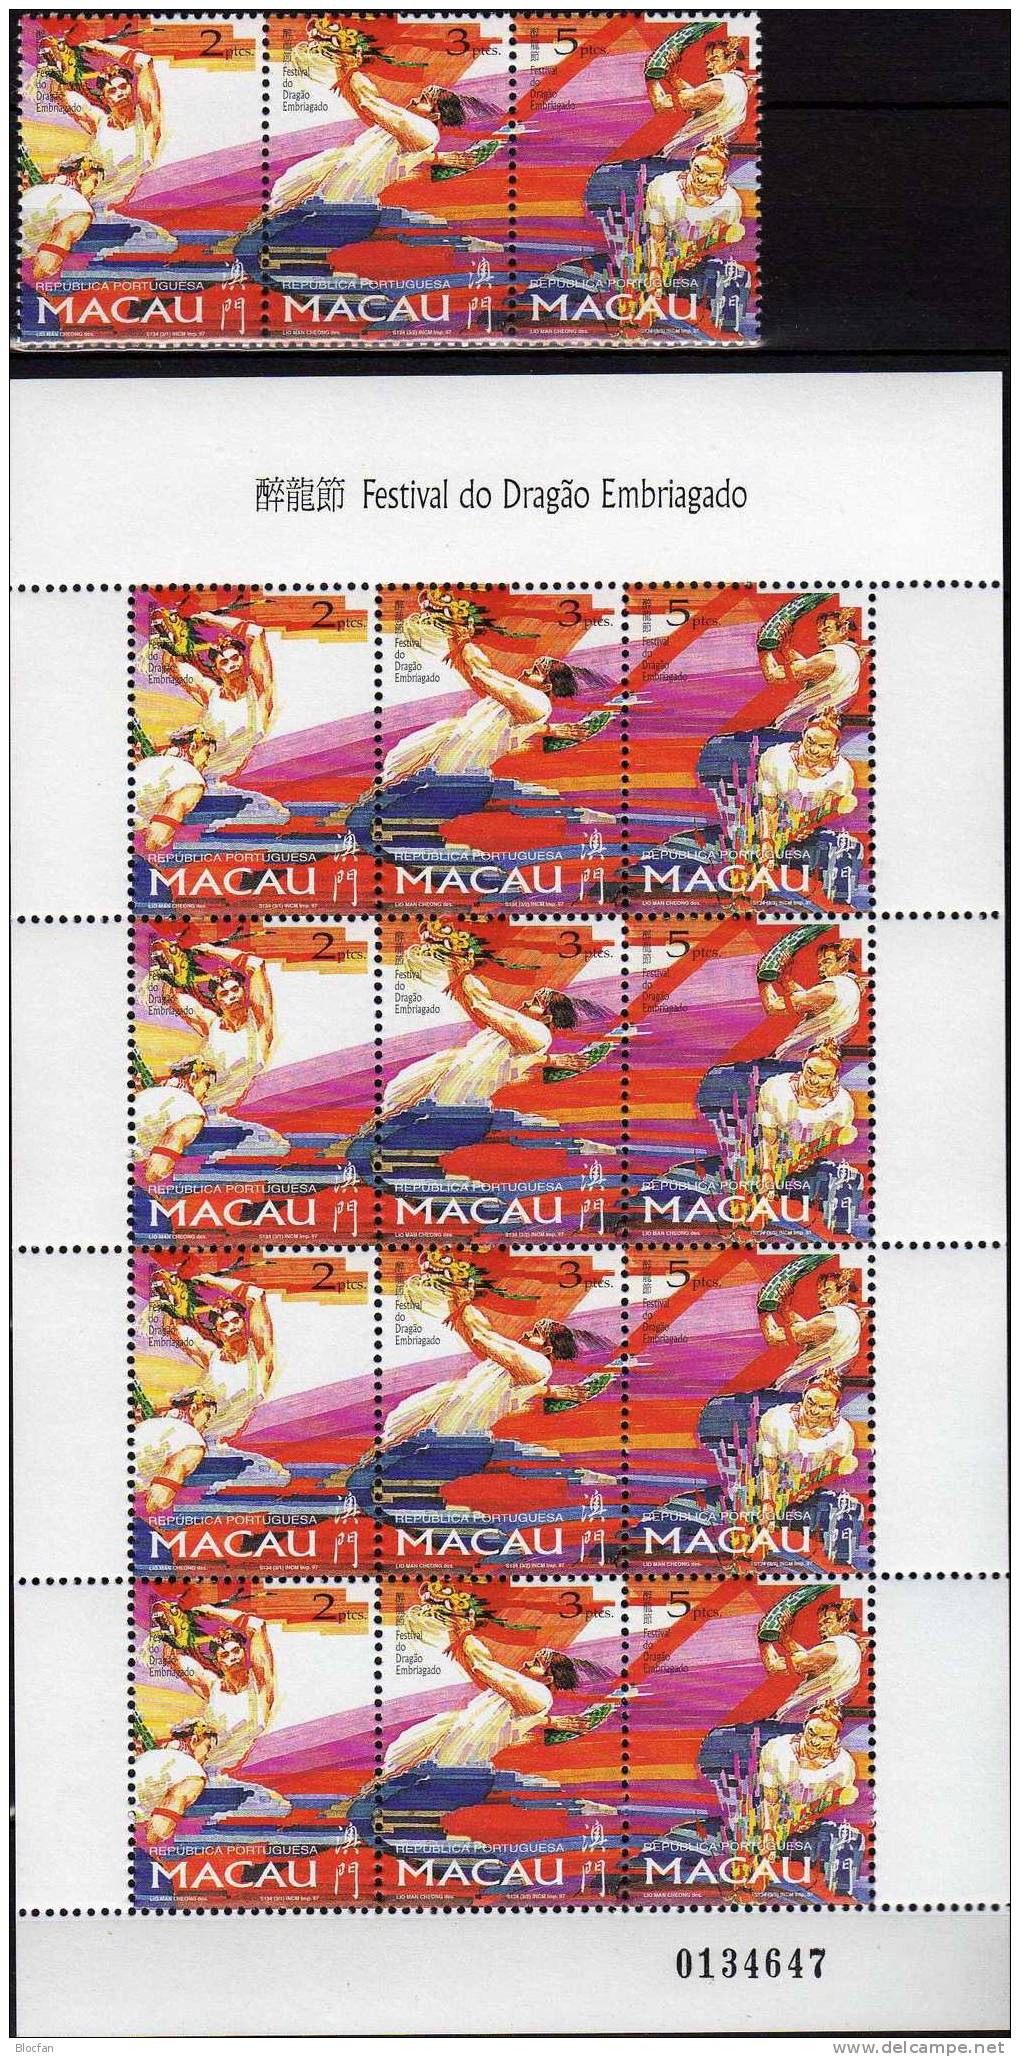 Drachenfestival Macao 913/15, ZD Plus Mini Sheet ** 43€ Drachenfest Mit Tänzer Bändern Fahnen Feuerwerk Of MACAU - Collections, Lots & Series